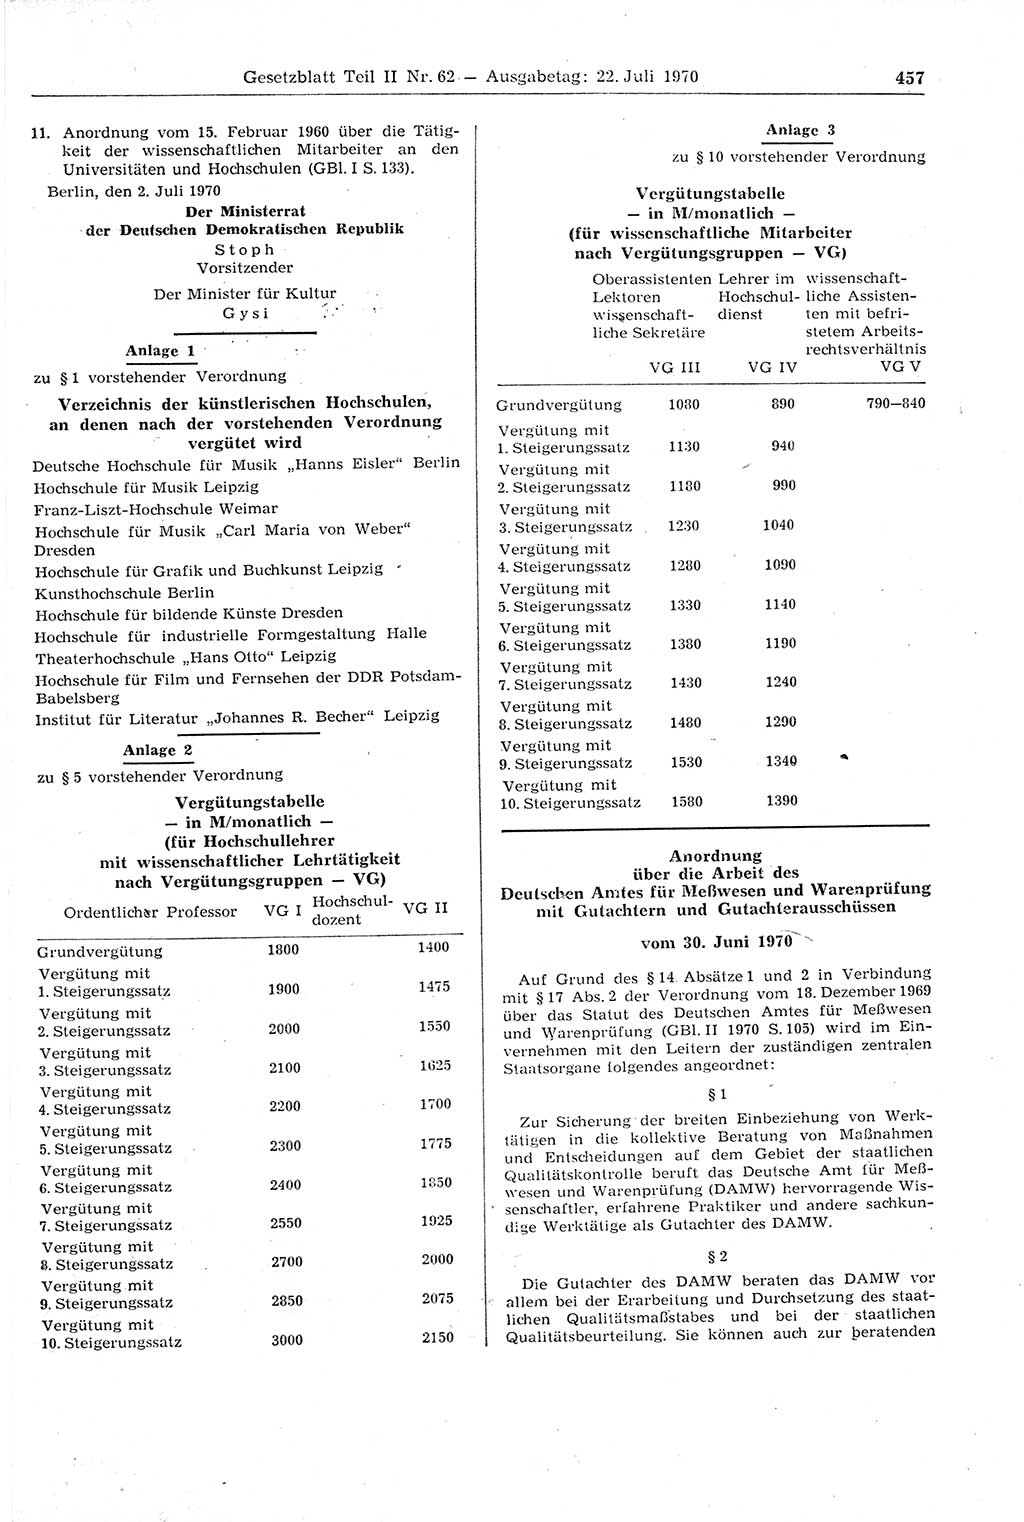 Gesetzblatt (GBl.) der Deutschen Demokratischen Republik (DDR) Teil ⅠⅠ 1970, Seite 457 (GBl. DDR ⅠⅠ 1970, S. 457)